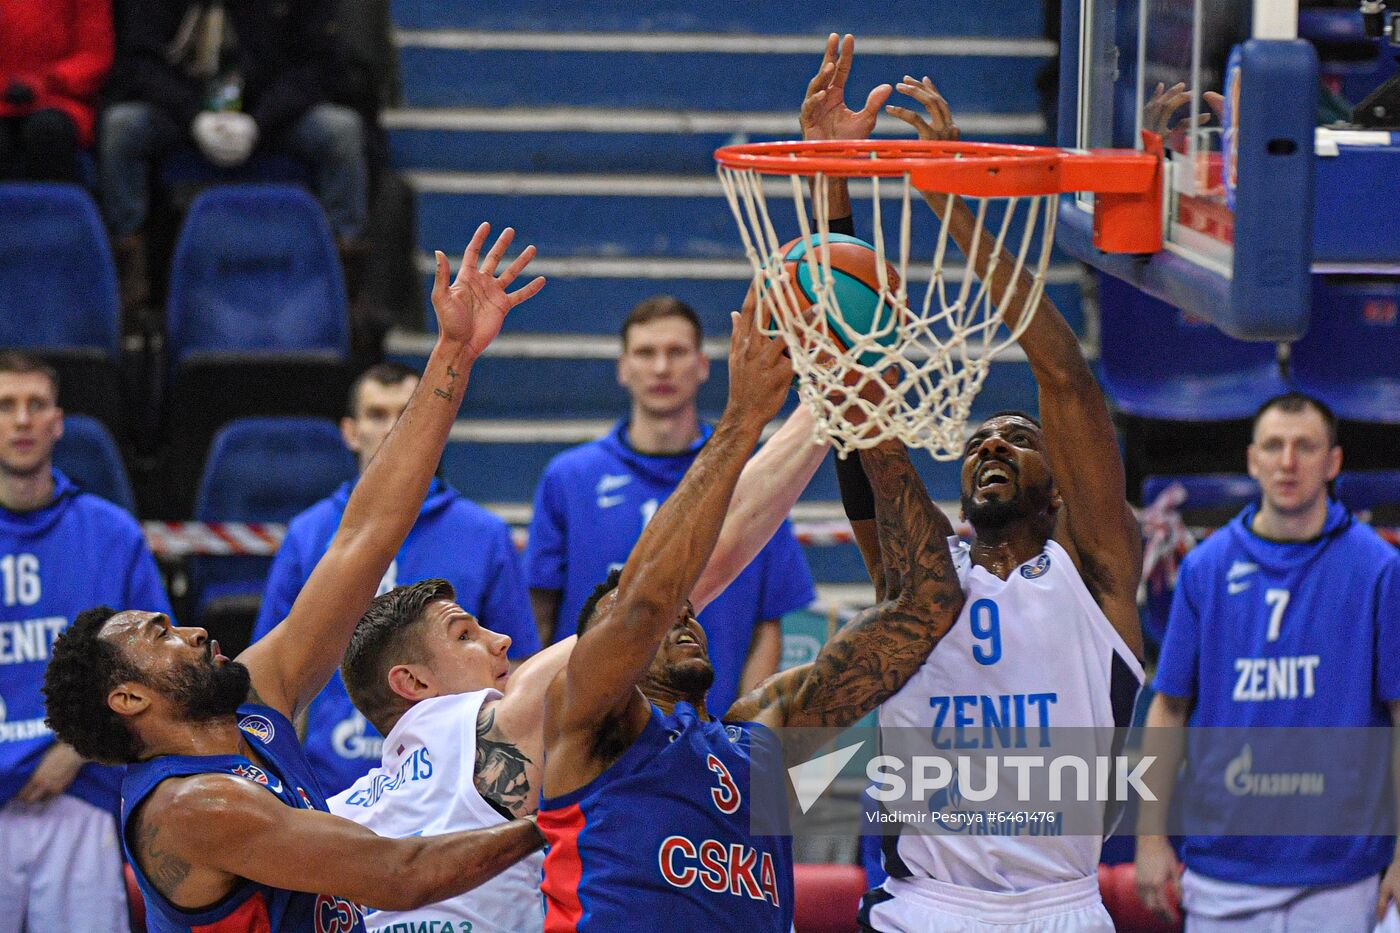 Russia Basketball CSKA - Zenit